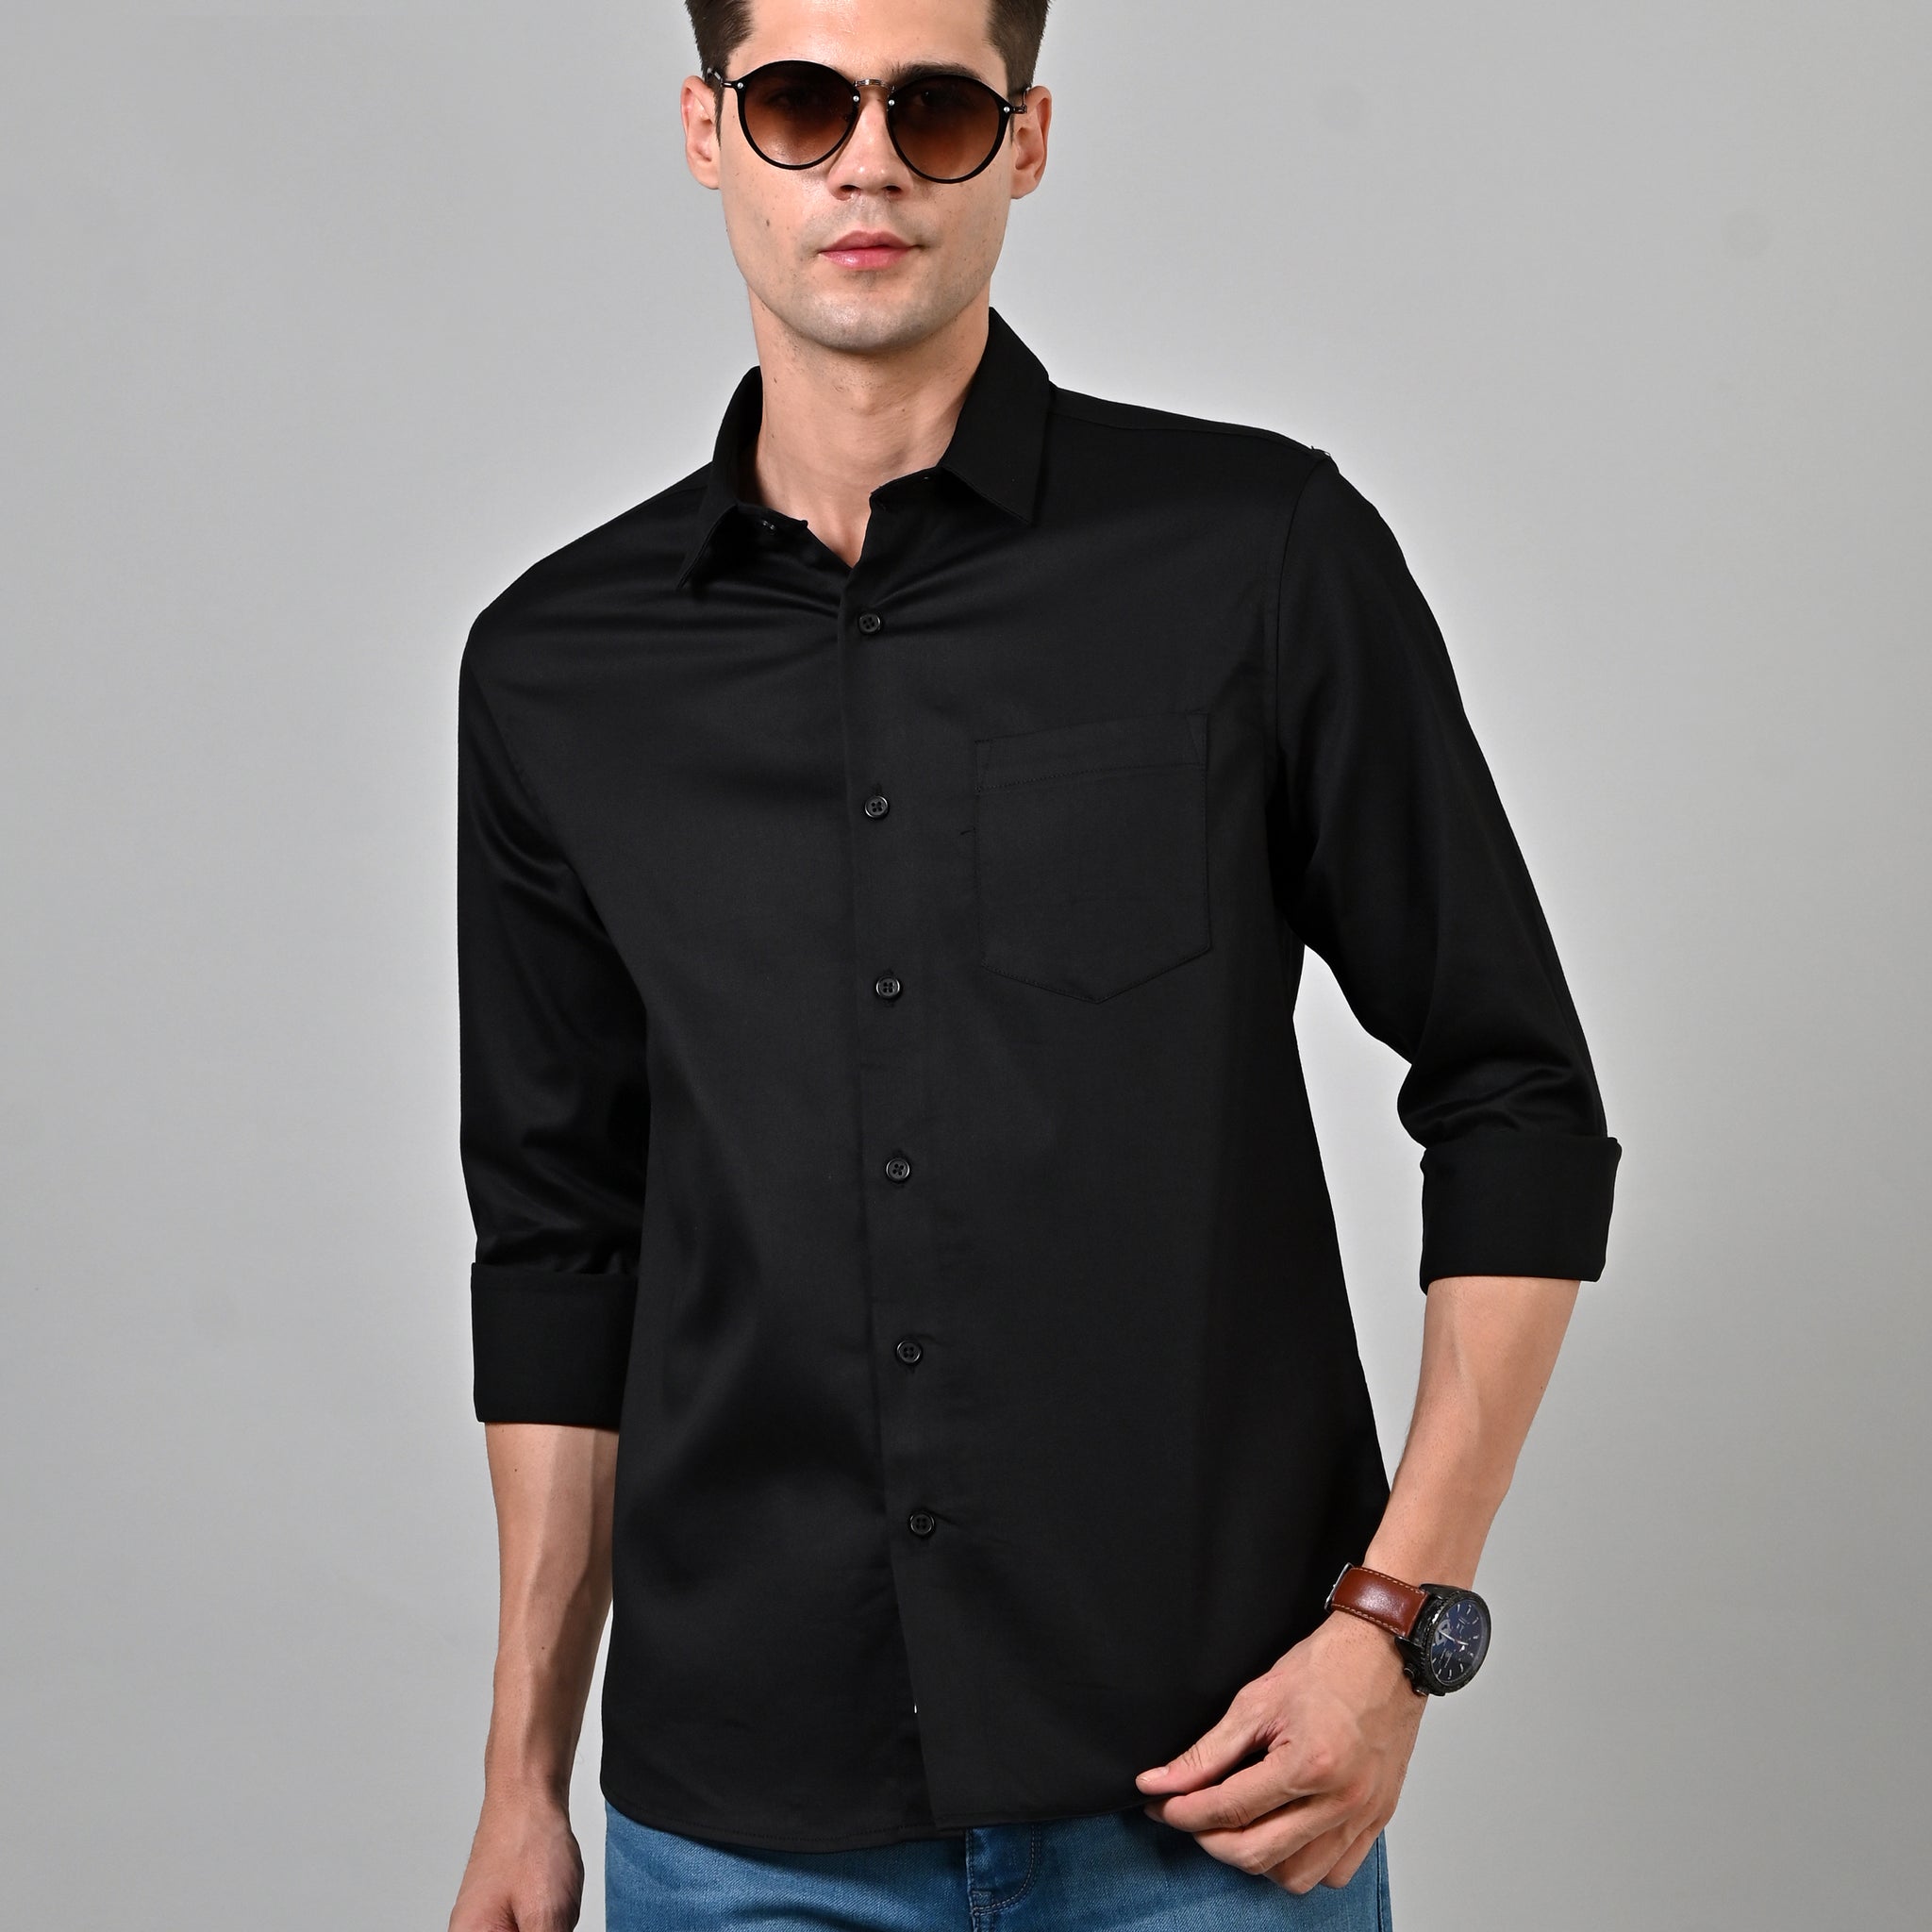 Satin Plain Black Shirt